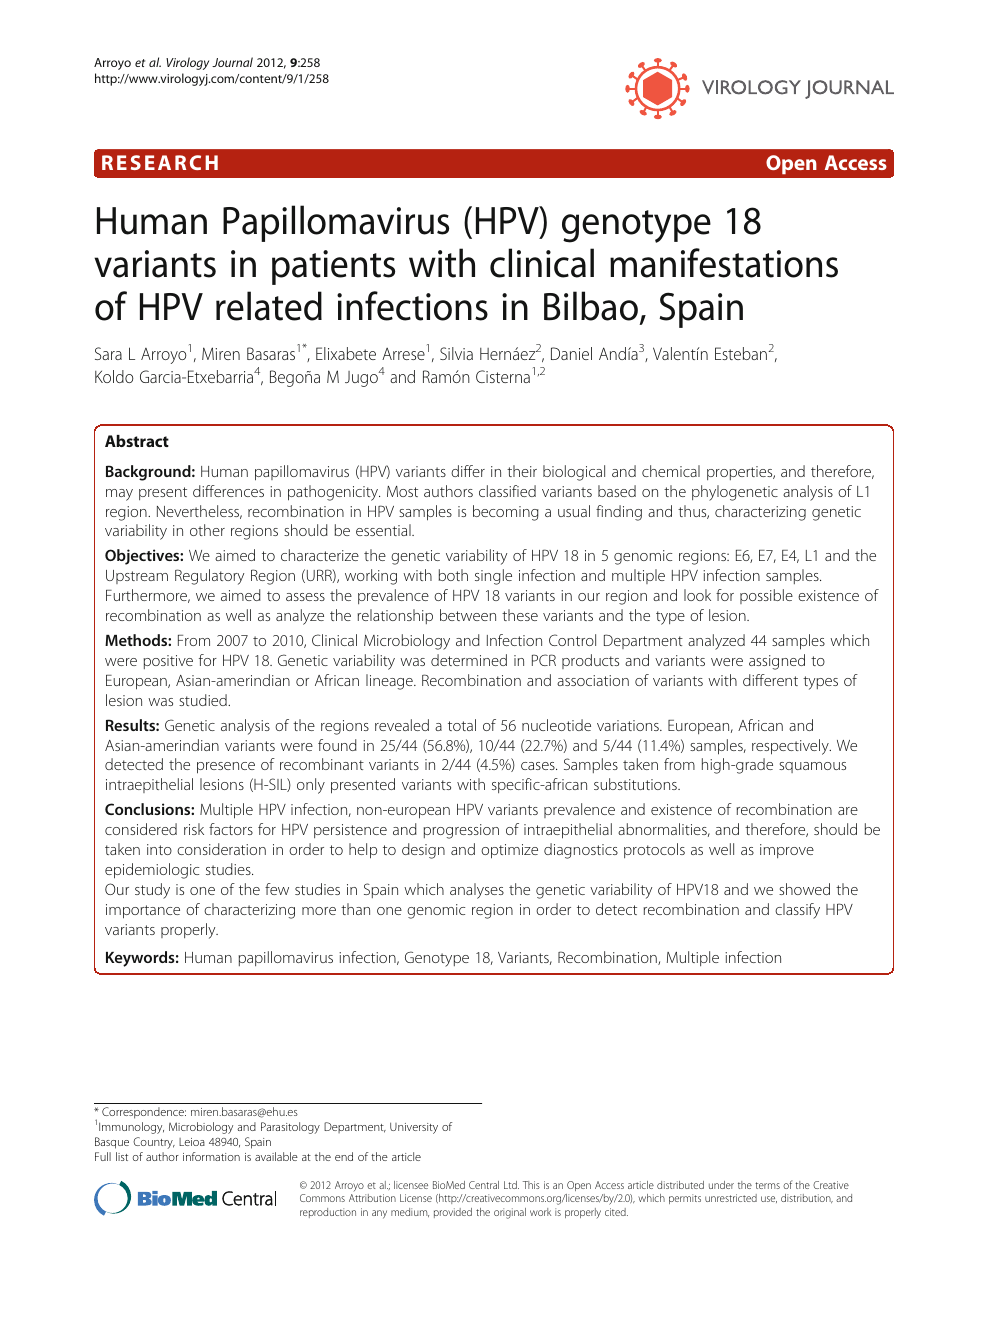 human papillomavirus infection variants)